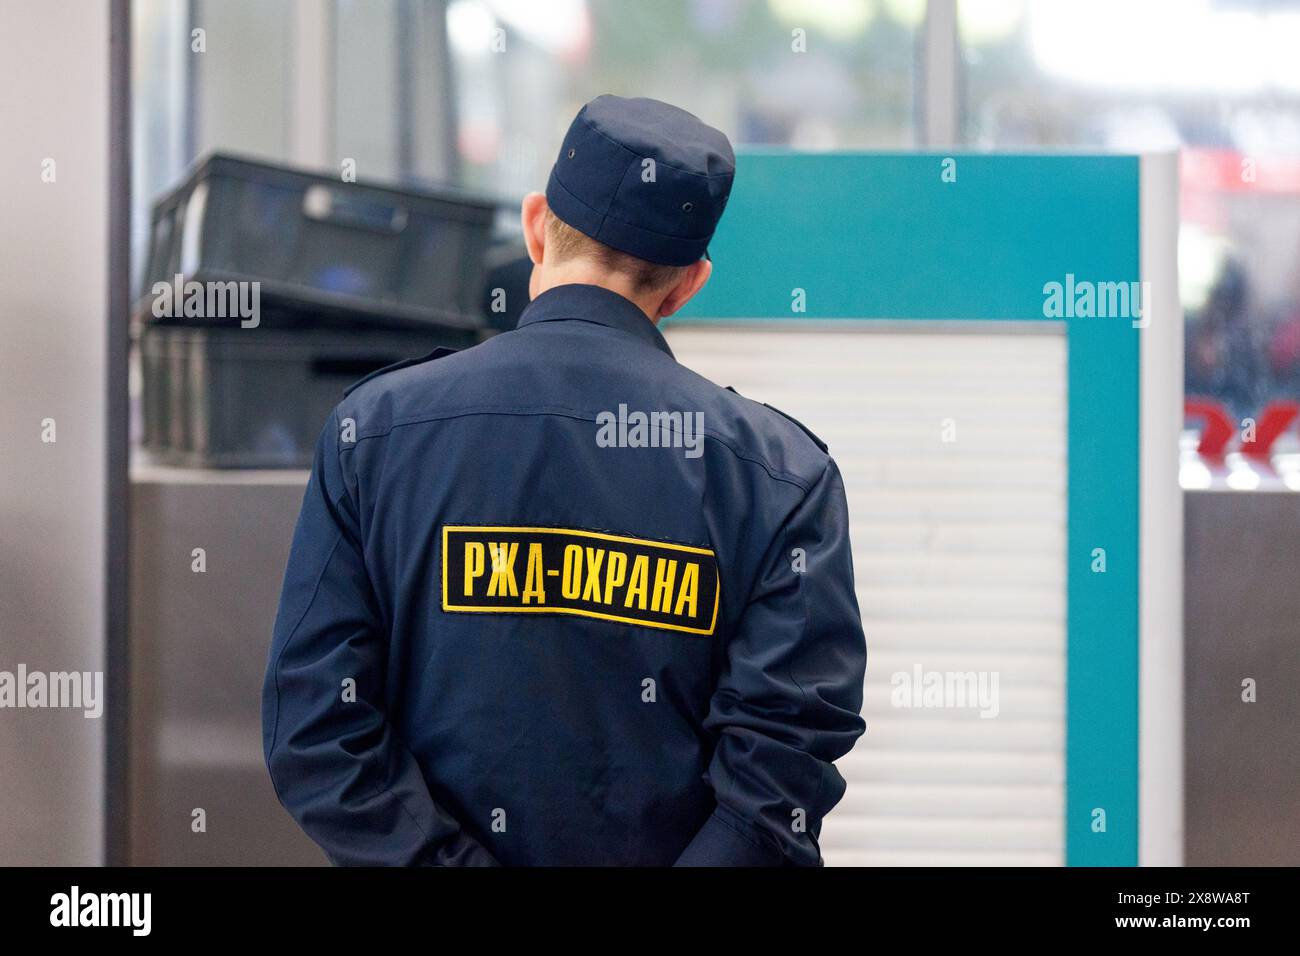 Moscou, Russie - 08 juillet 2018 : officier de la sécurité RZD (russe : РЖД-Охрана) scannant les bagages des passagers du terminal ferroviaire de Kazansky. Banque D'Images